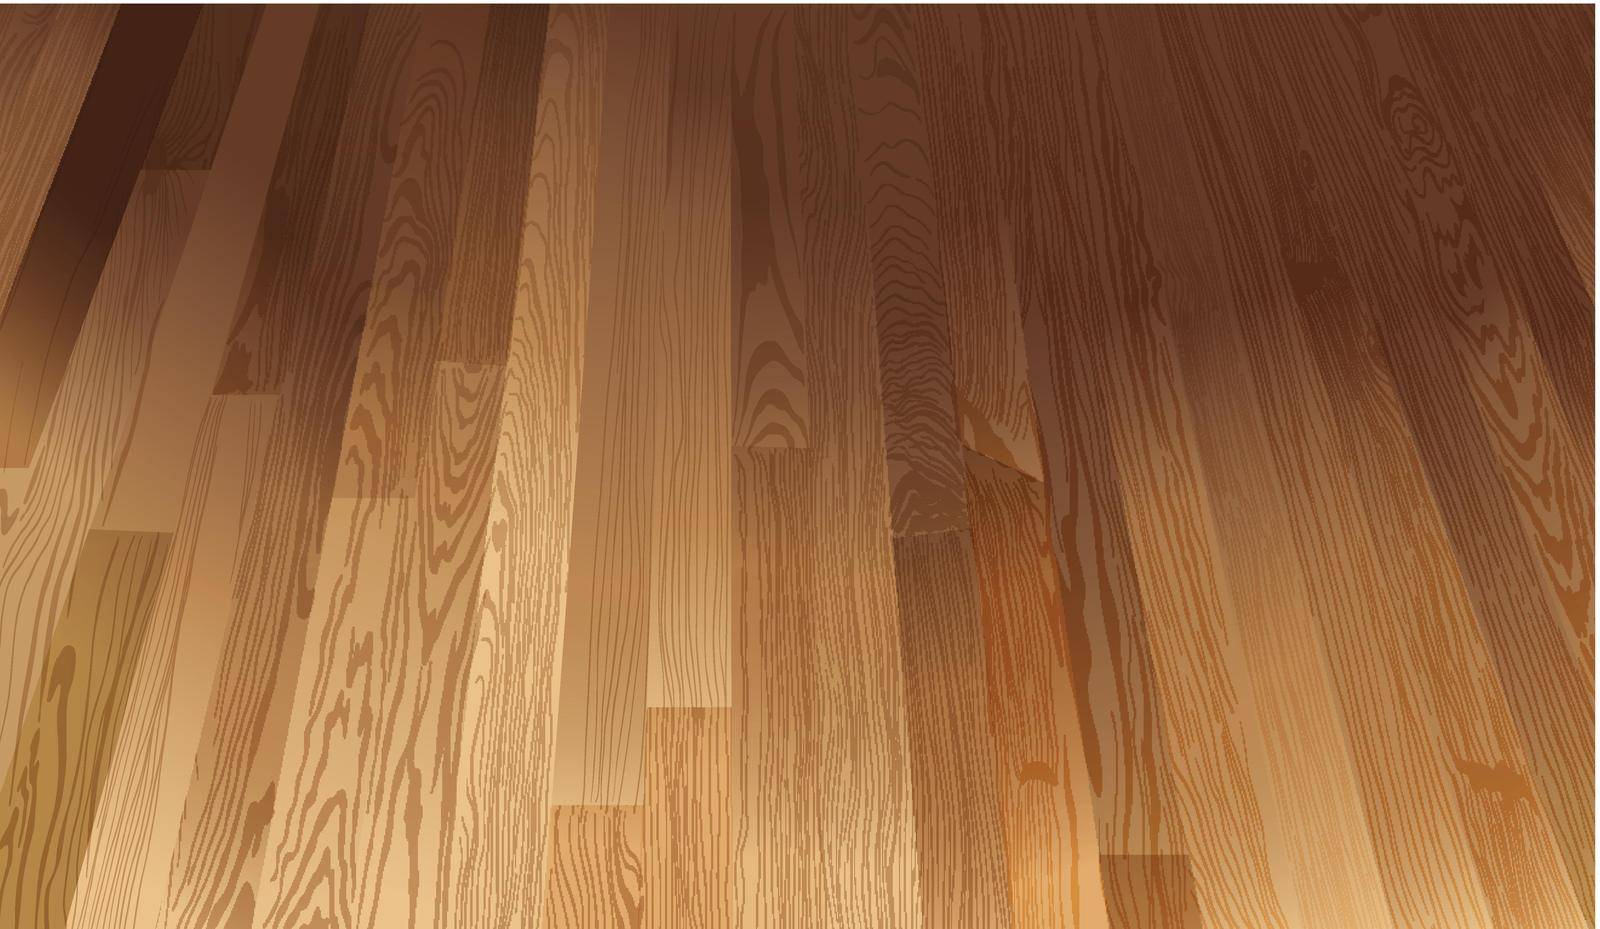 A floor texture by iimages